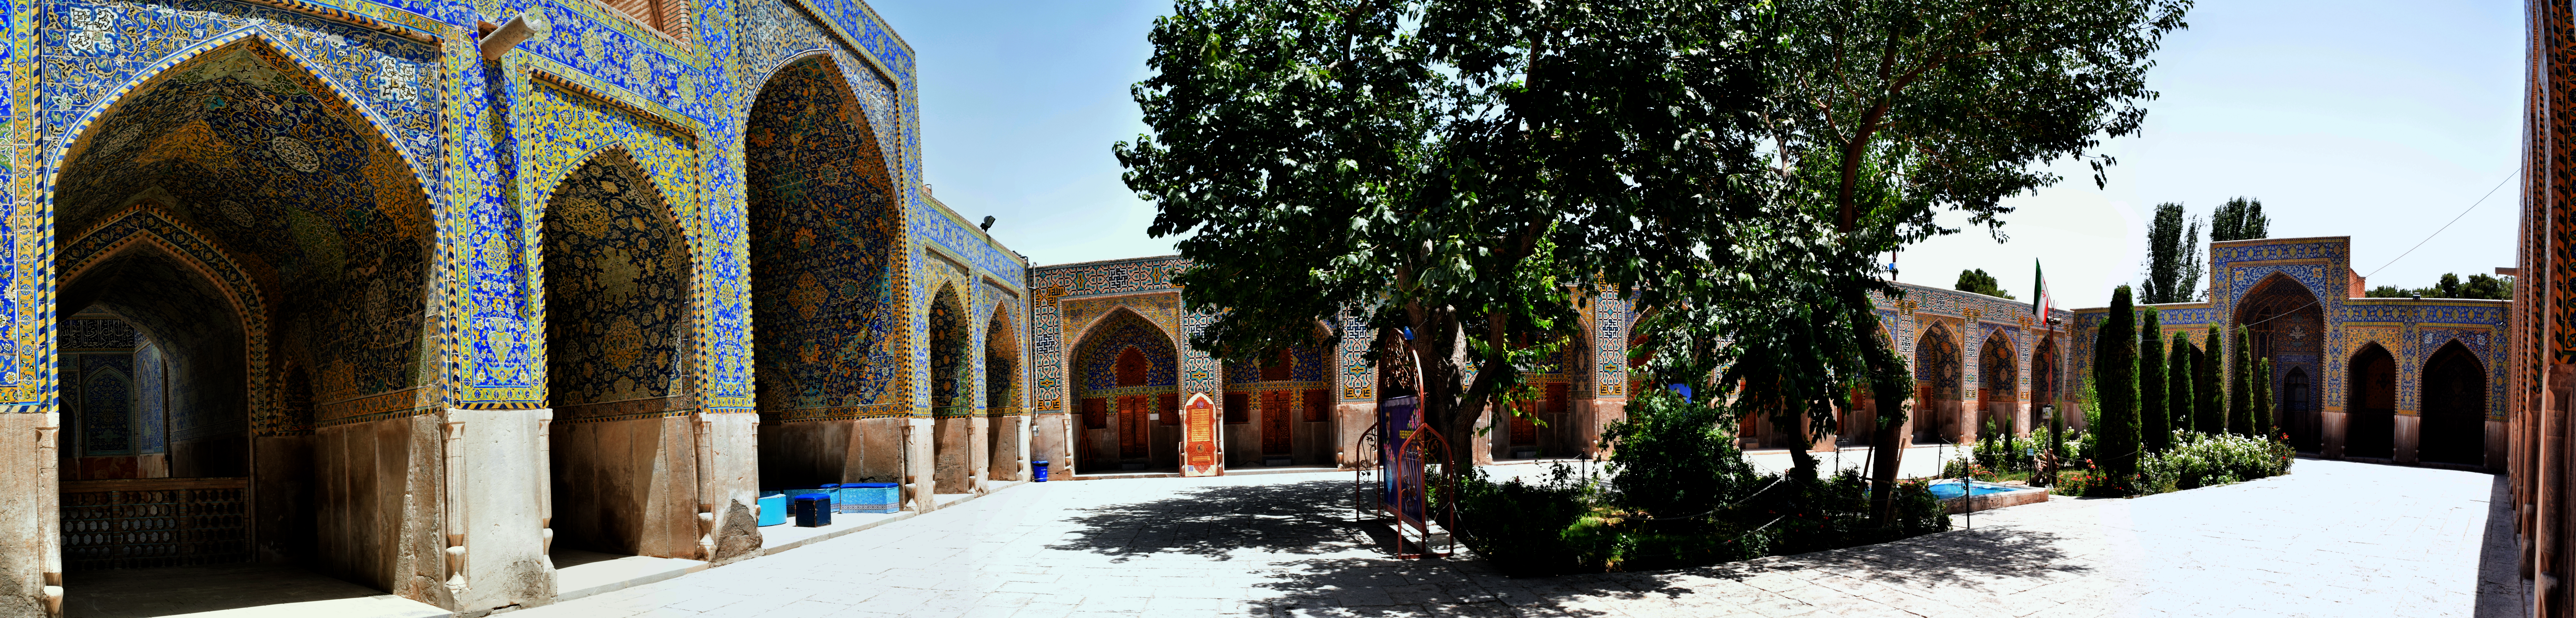 مدرسه عباسی (مدرسه ناصری)، مسجد جامع شاه عباسی - اصفهان 